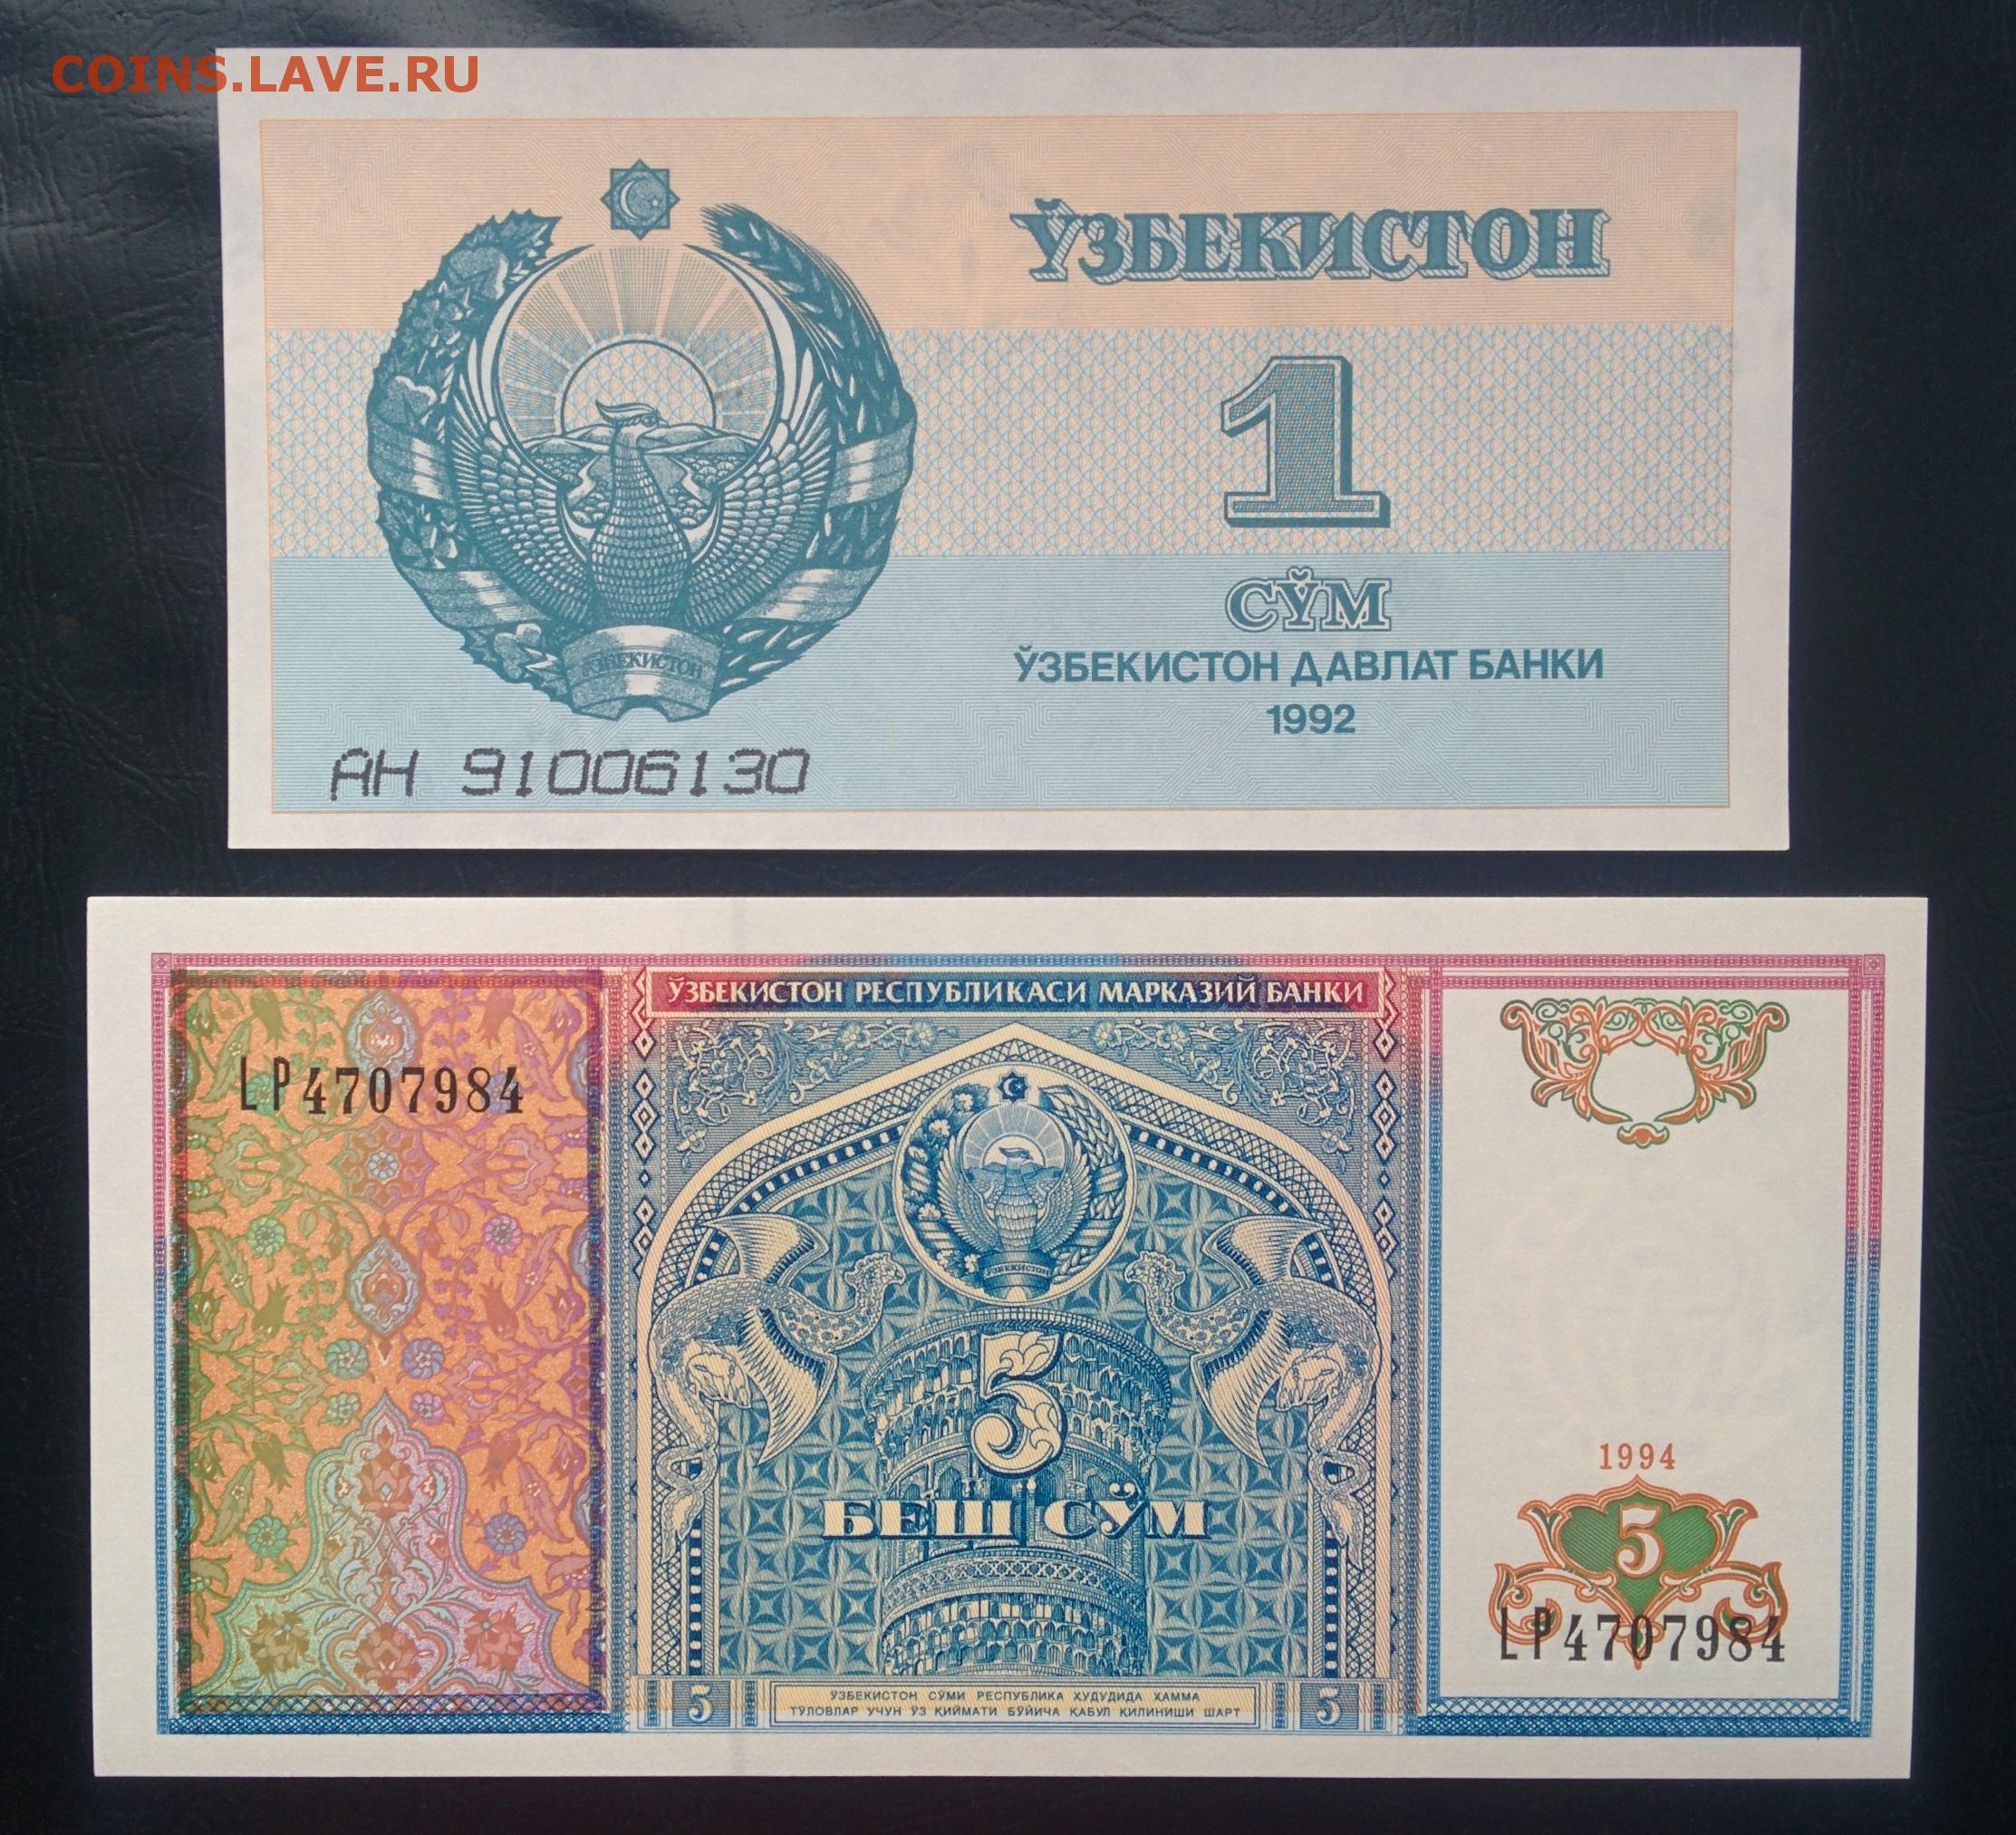 500 рублей в узбекских. Узбекистан 1 сум 1994 г. UNC. Узбекский сум 1994 года. Узбекистанские 5 сум в рублях.